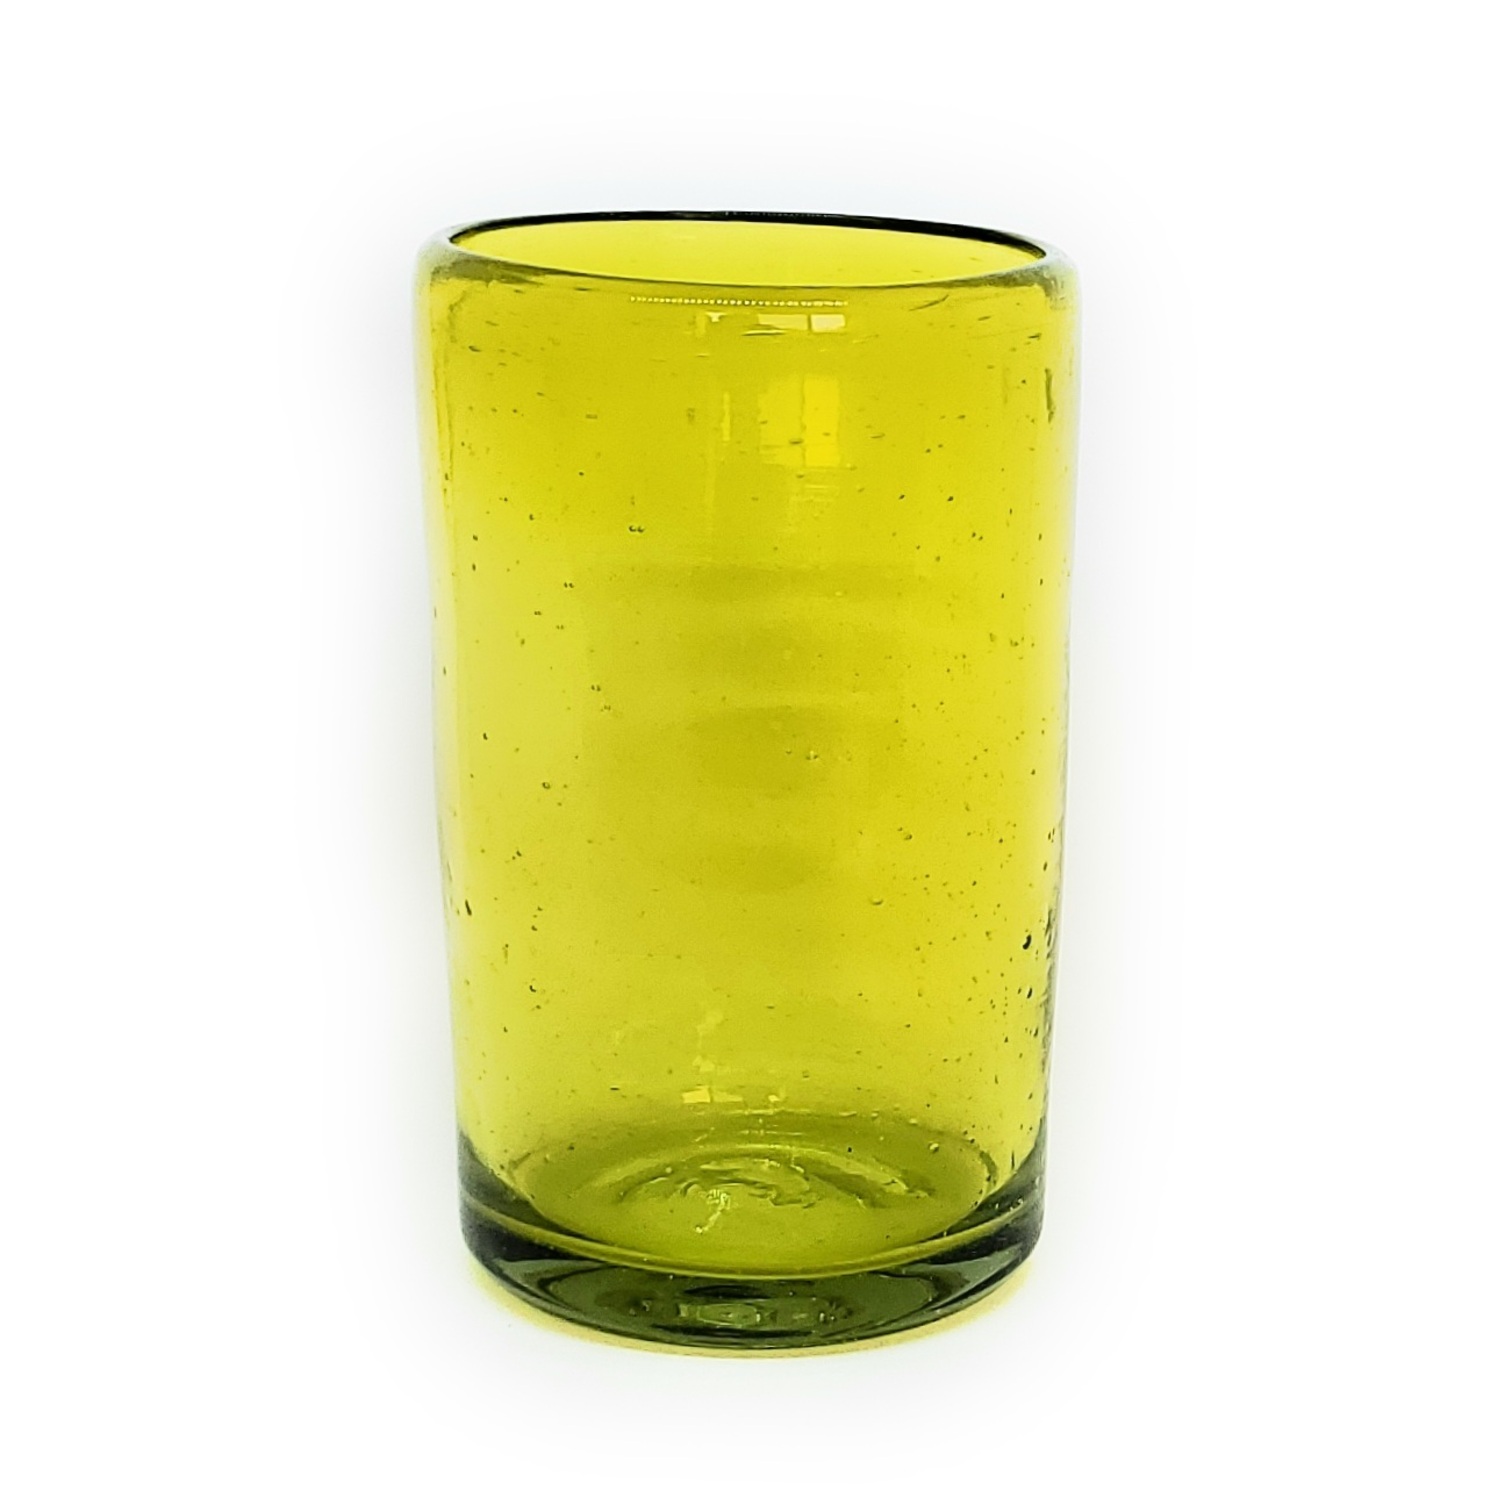 Ofertas / Juego de 6 vasos grandes color amarillos / Éstos artesanales vasos le darán un toque clásico a su bebida favorita.